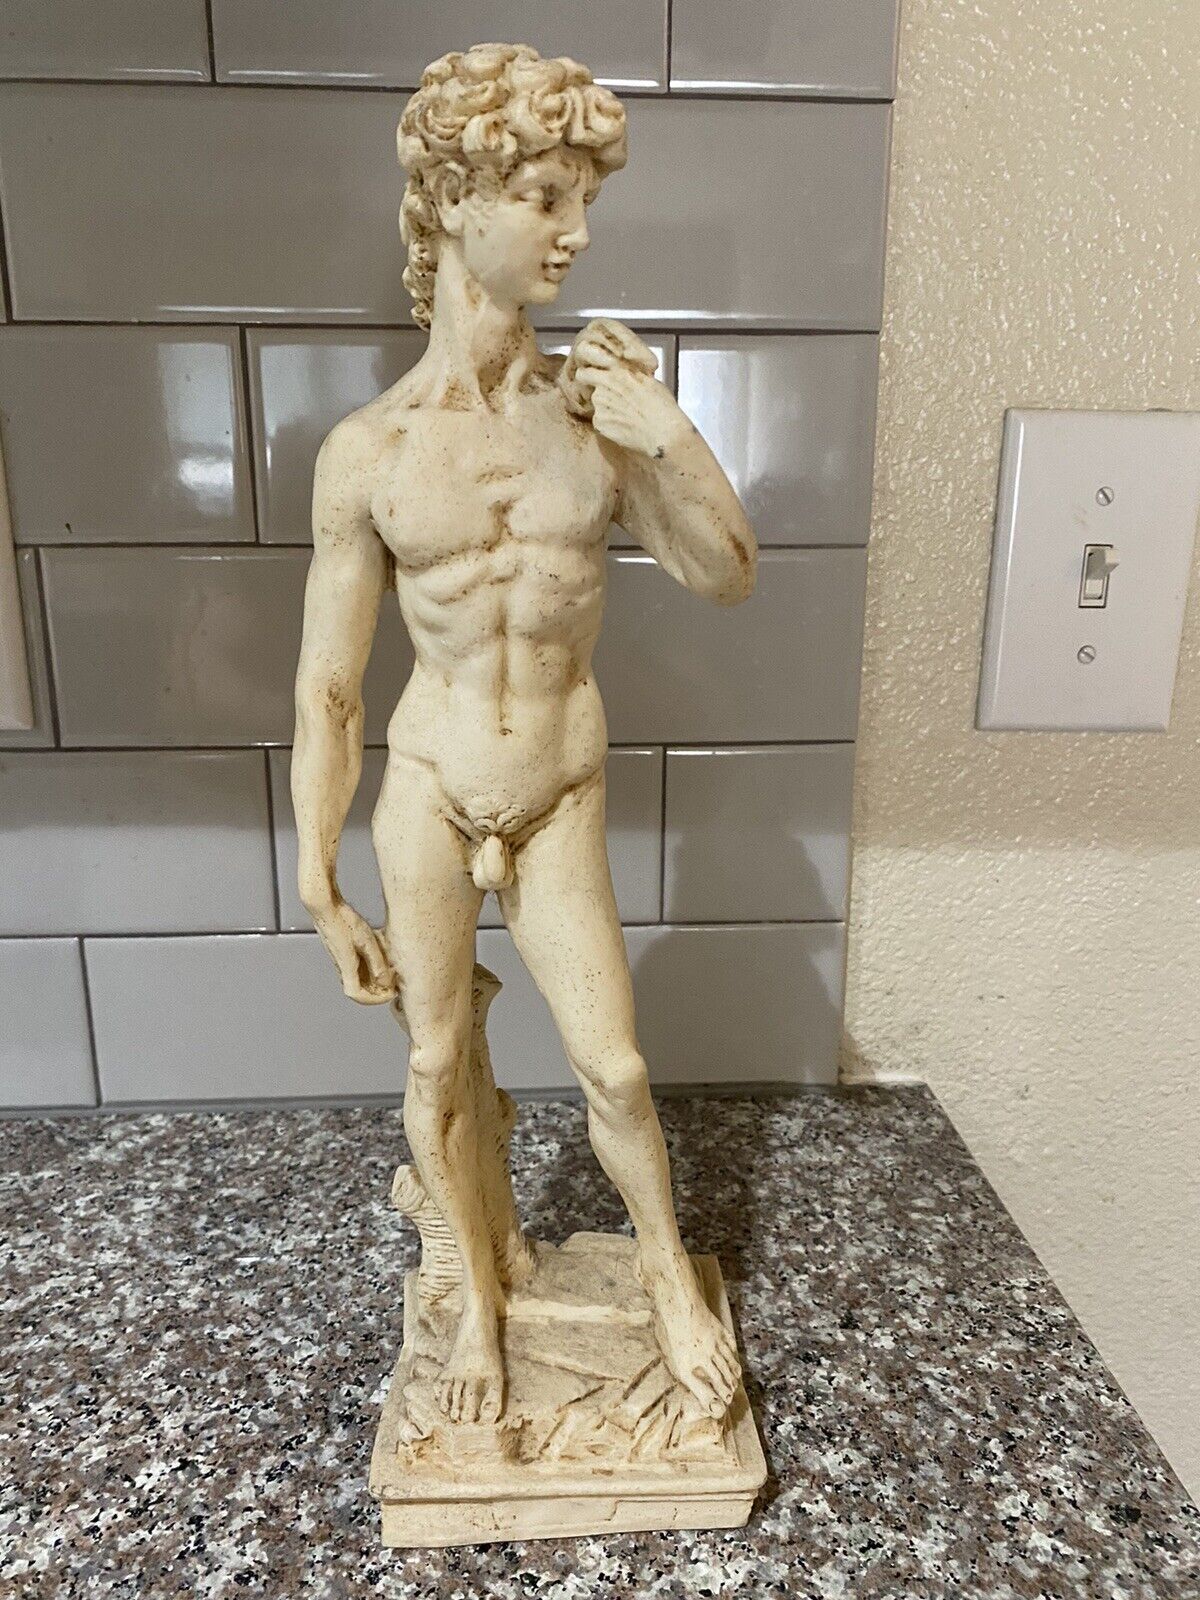 Michelangelo’s Statue of the David 13” Figure